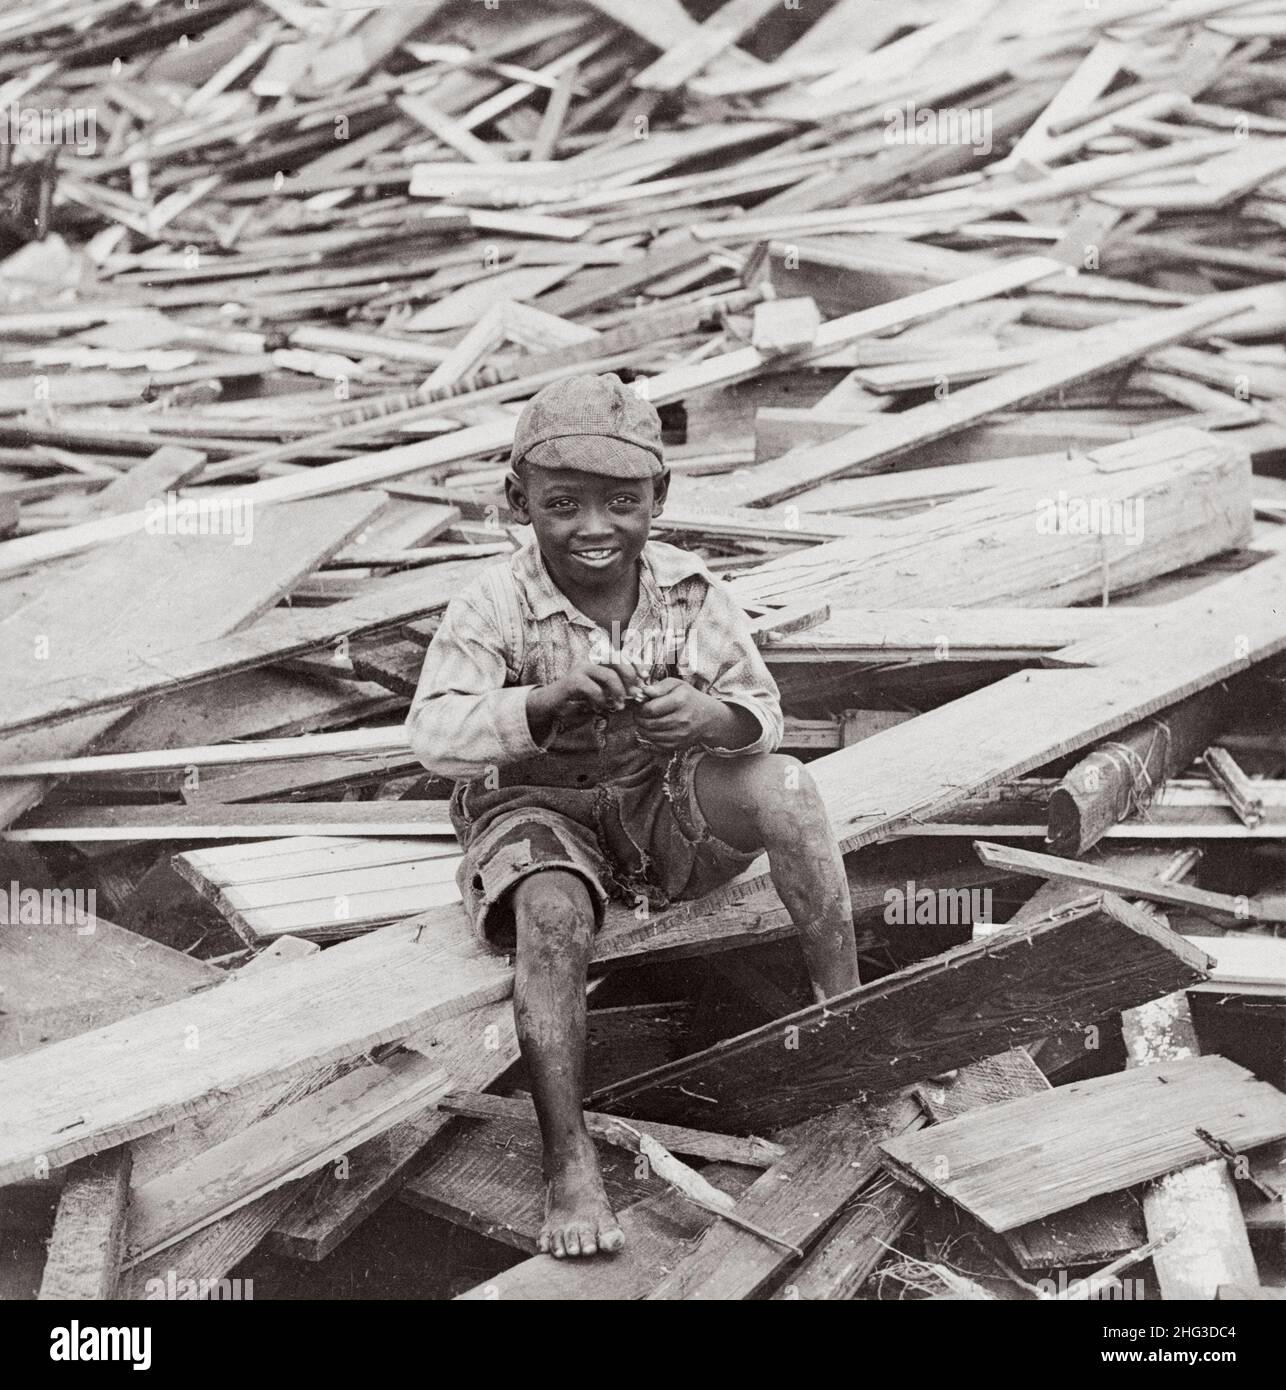 Photo d'archives de l'ouragan Galveston 1900.Un garçon afro-américain survivant est assis parmi les débris causés par l'ouragan.Galveston, Texas.ÉTATS-UNIS.Oct Banque D'Images